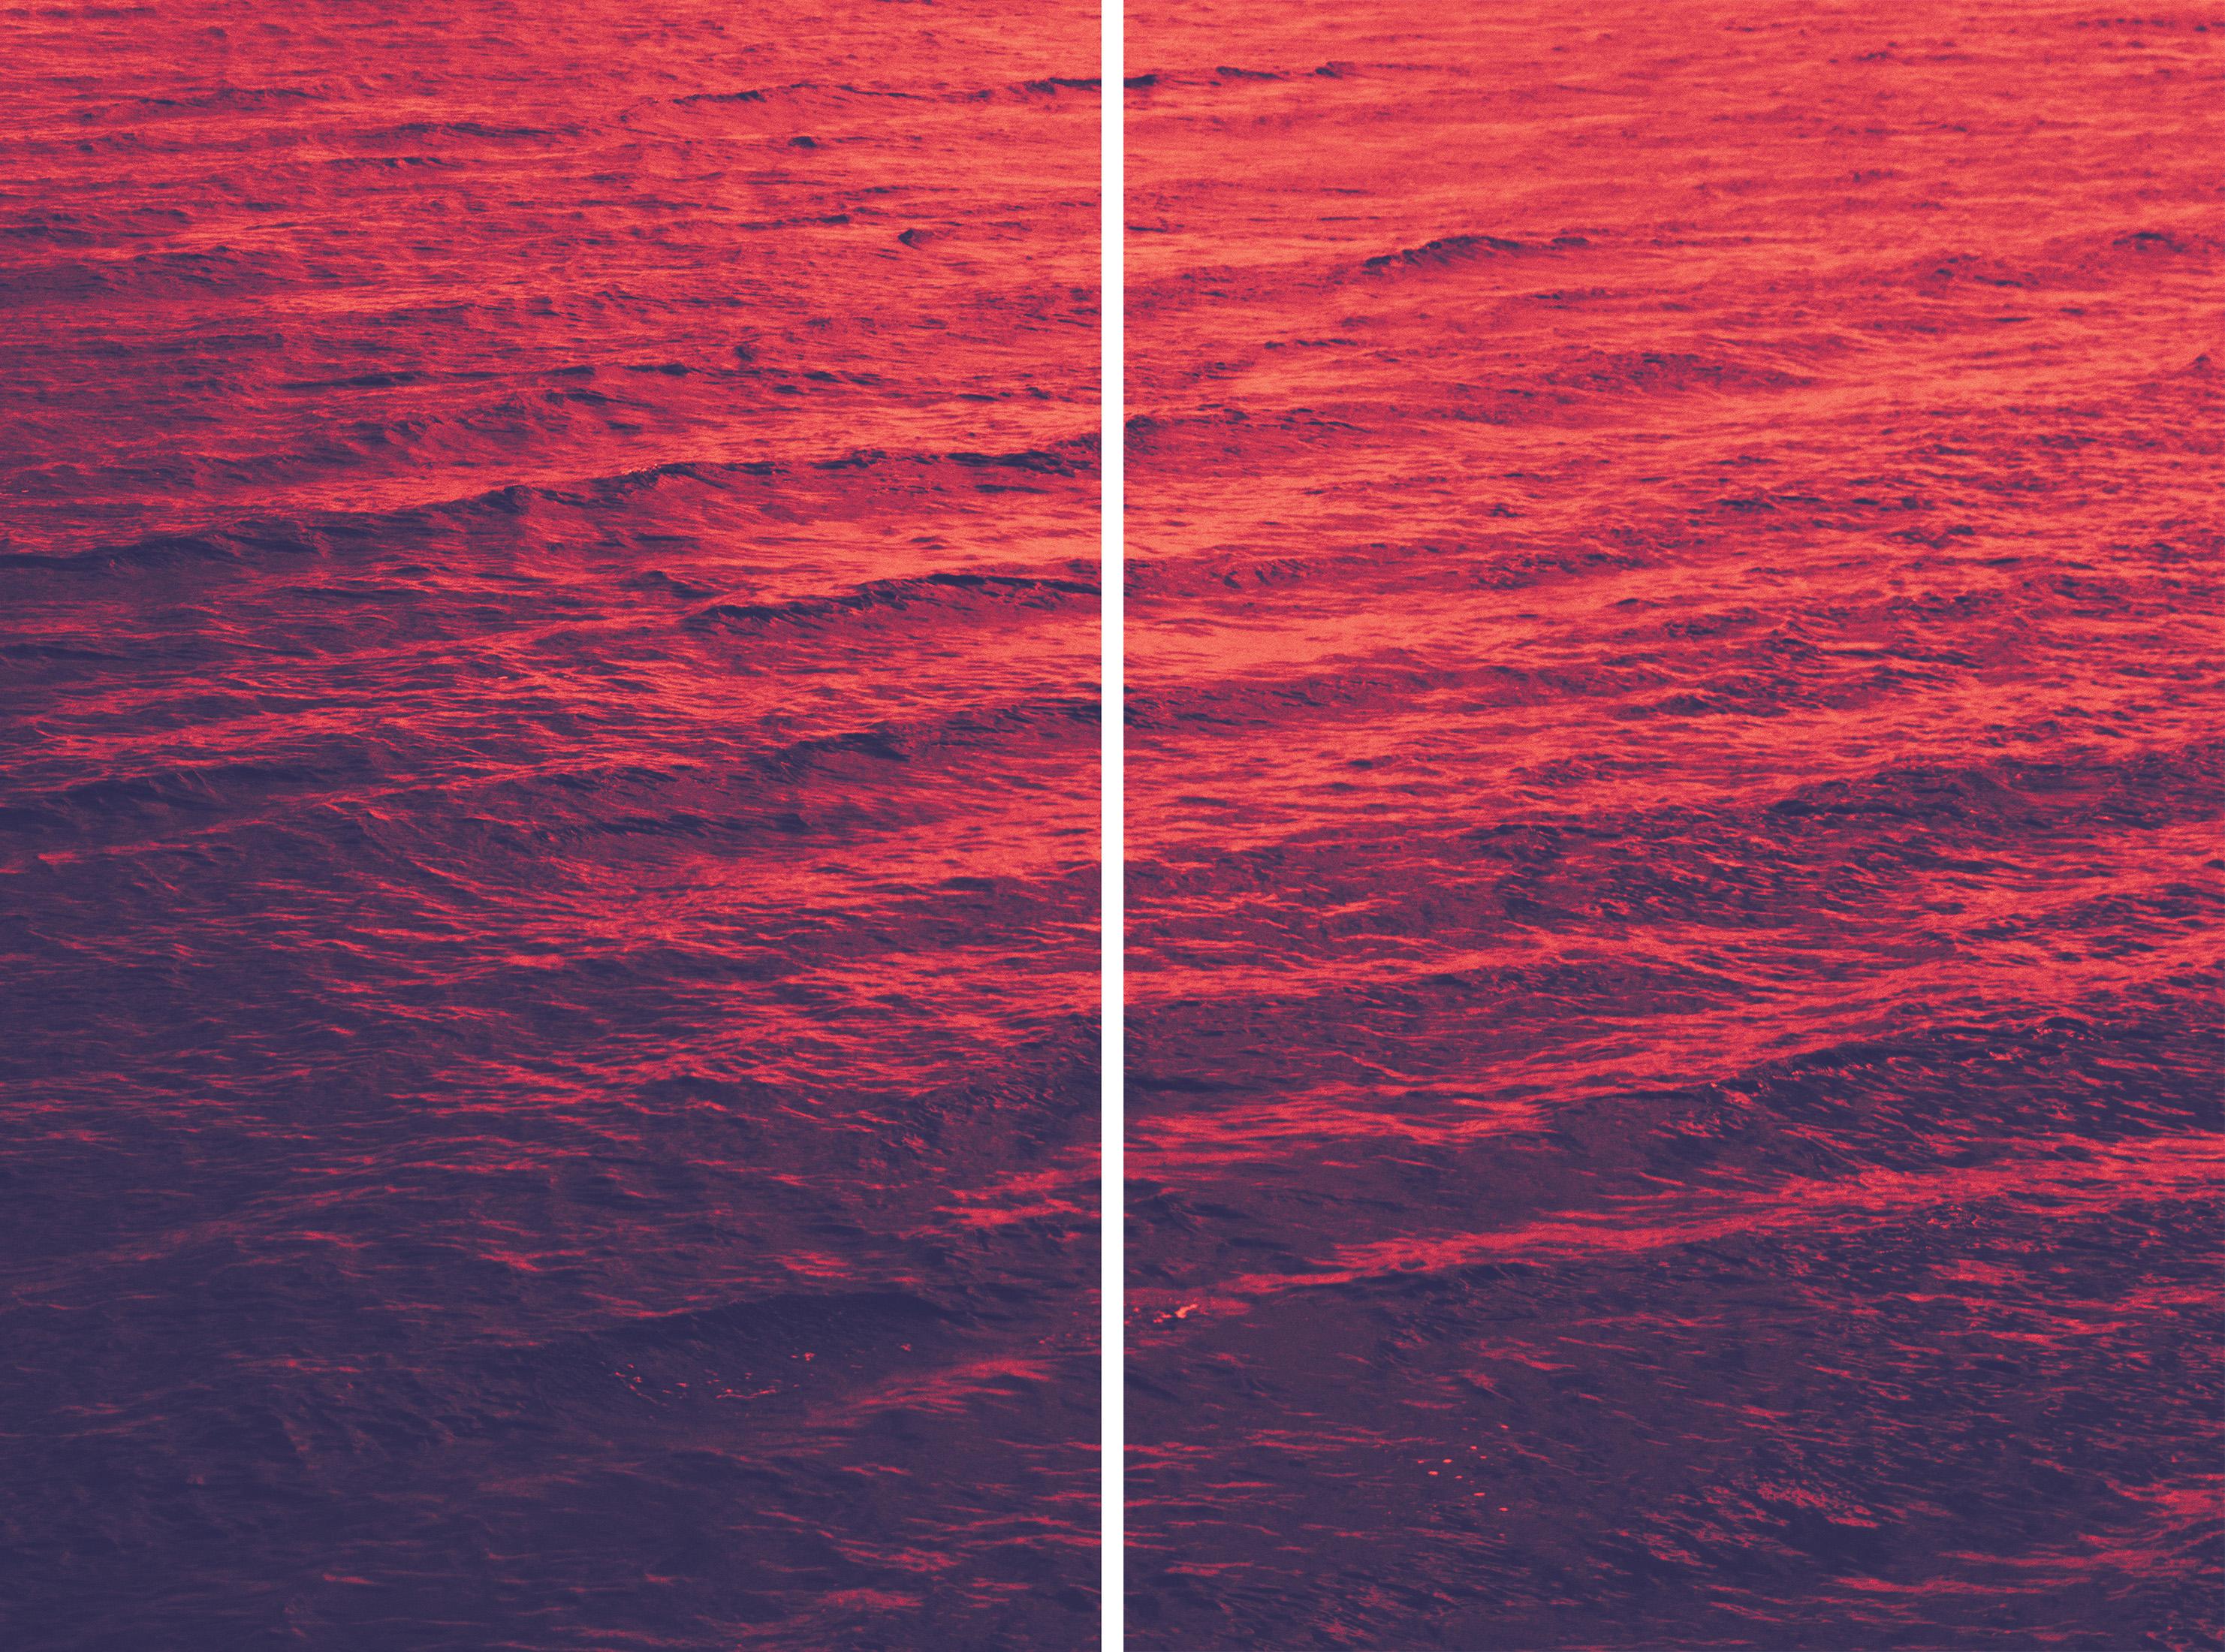 Ryan Rivadeneyra Color Photograph – Rotes Meer, Abstraktes Diptychon, Giclée Druck Goldenes Rosa, Blaues Mittelmeer Meereslandschaft